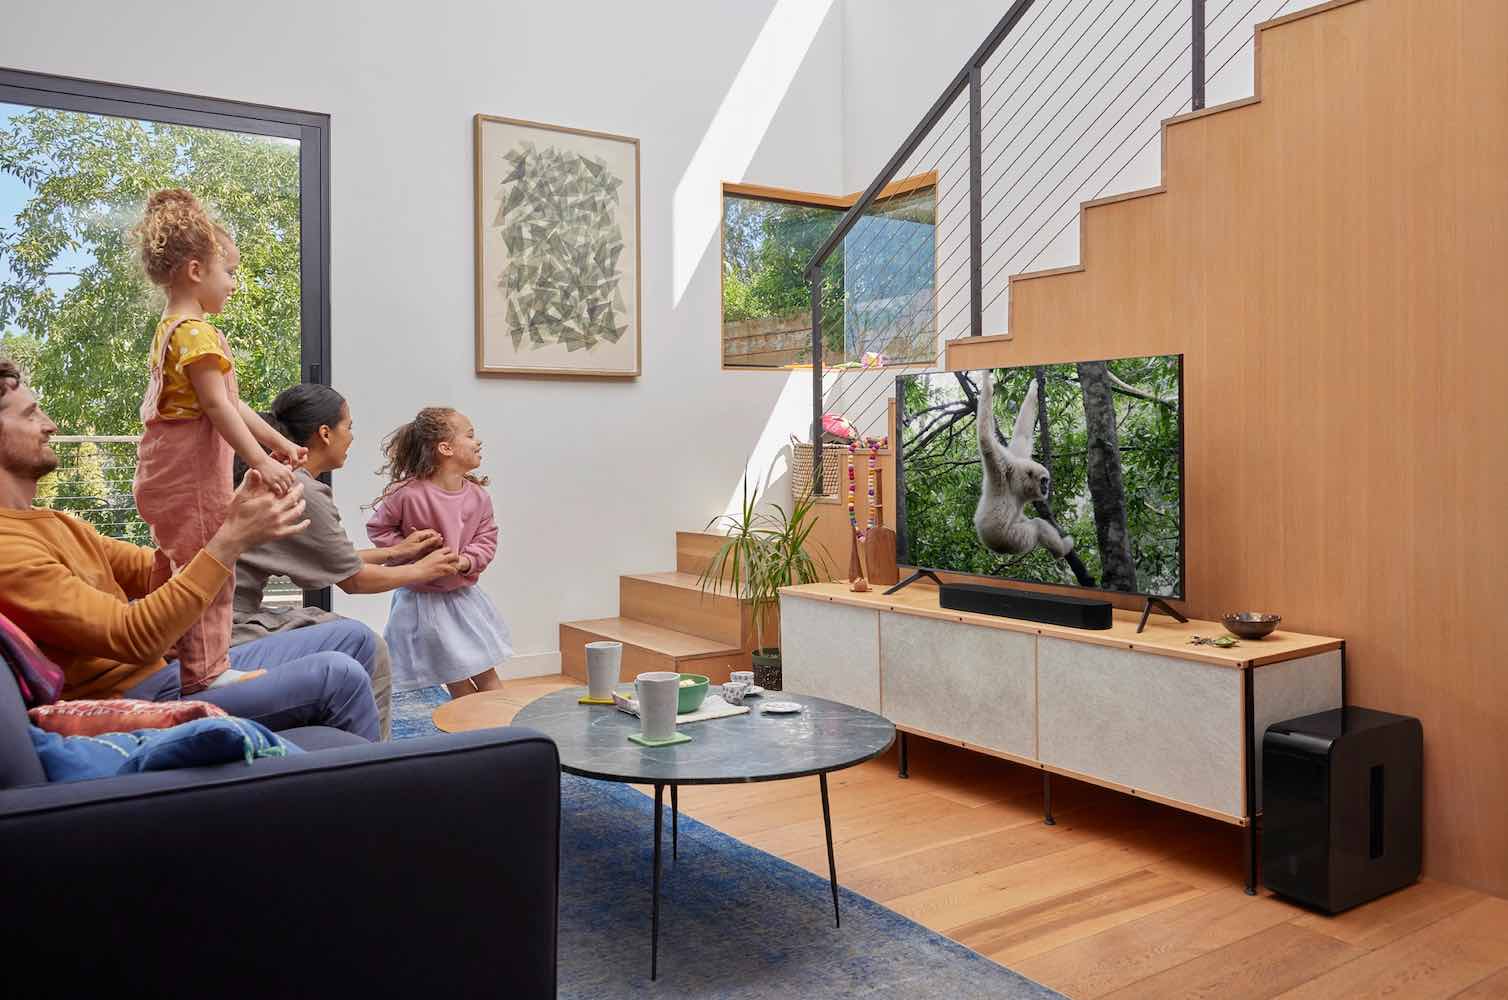 adding a sound bar to your living room TV